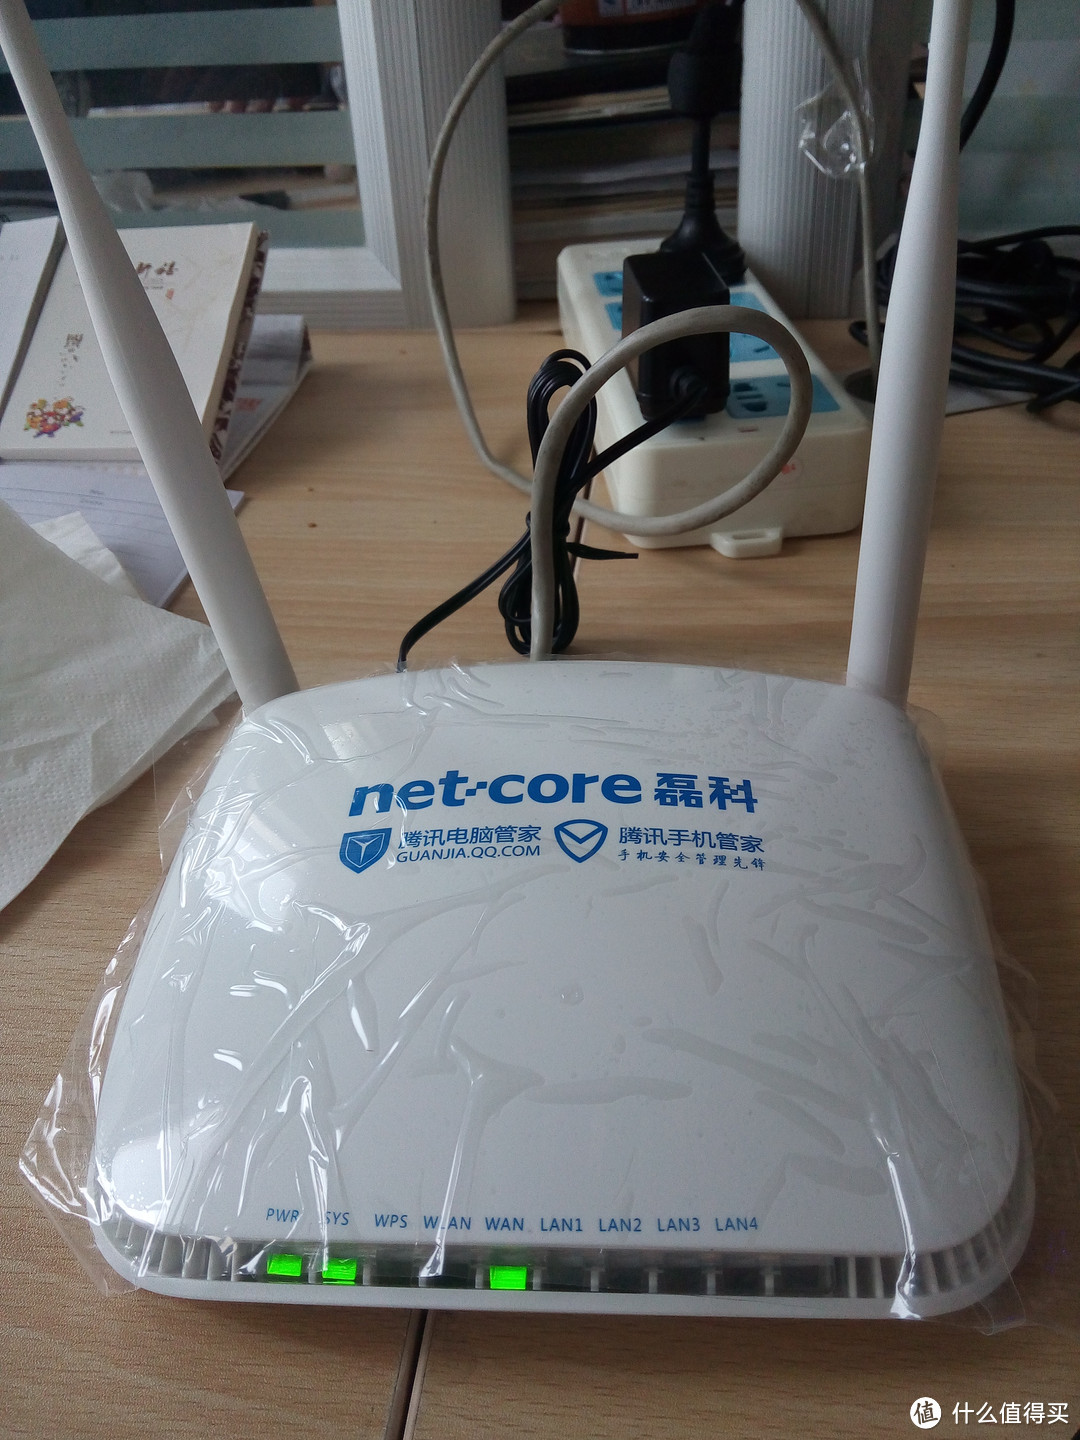 Netcore 磊科 Q3 300M无线路由器 开箱试用+刷机